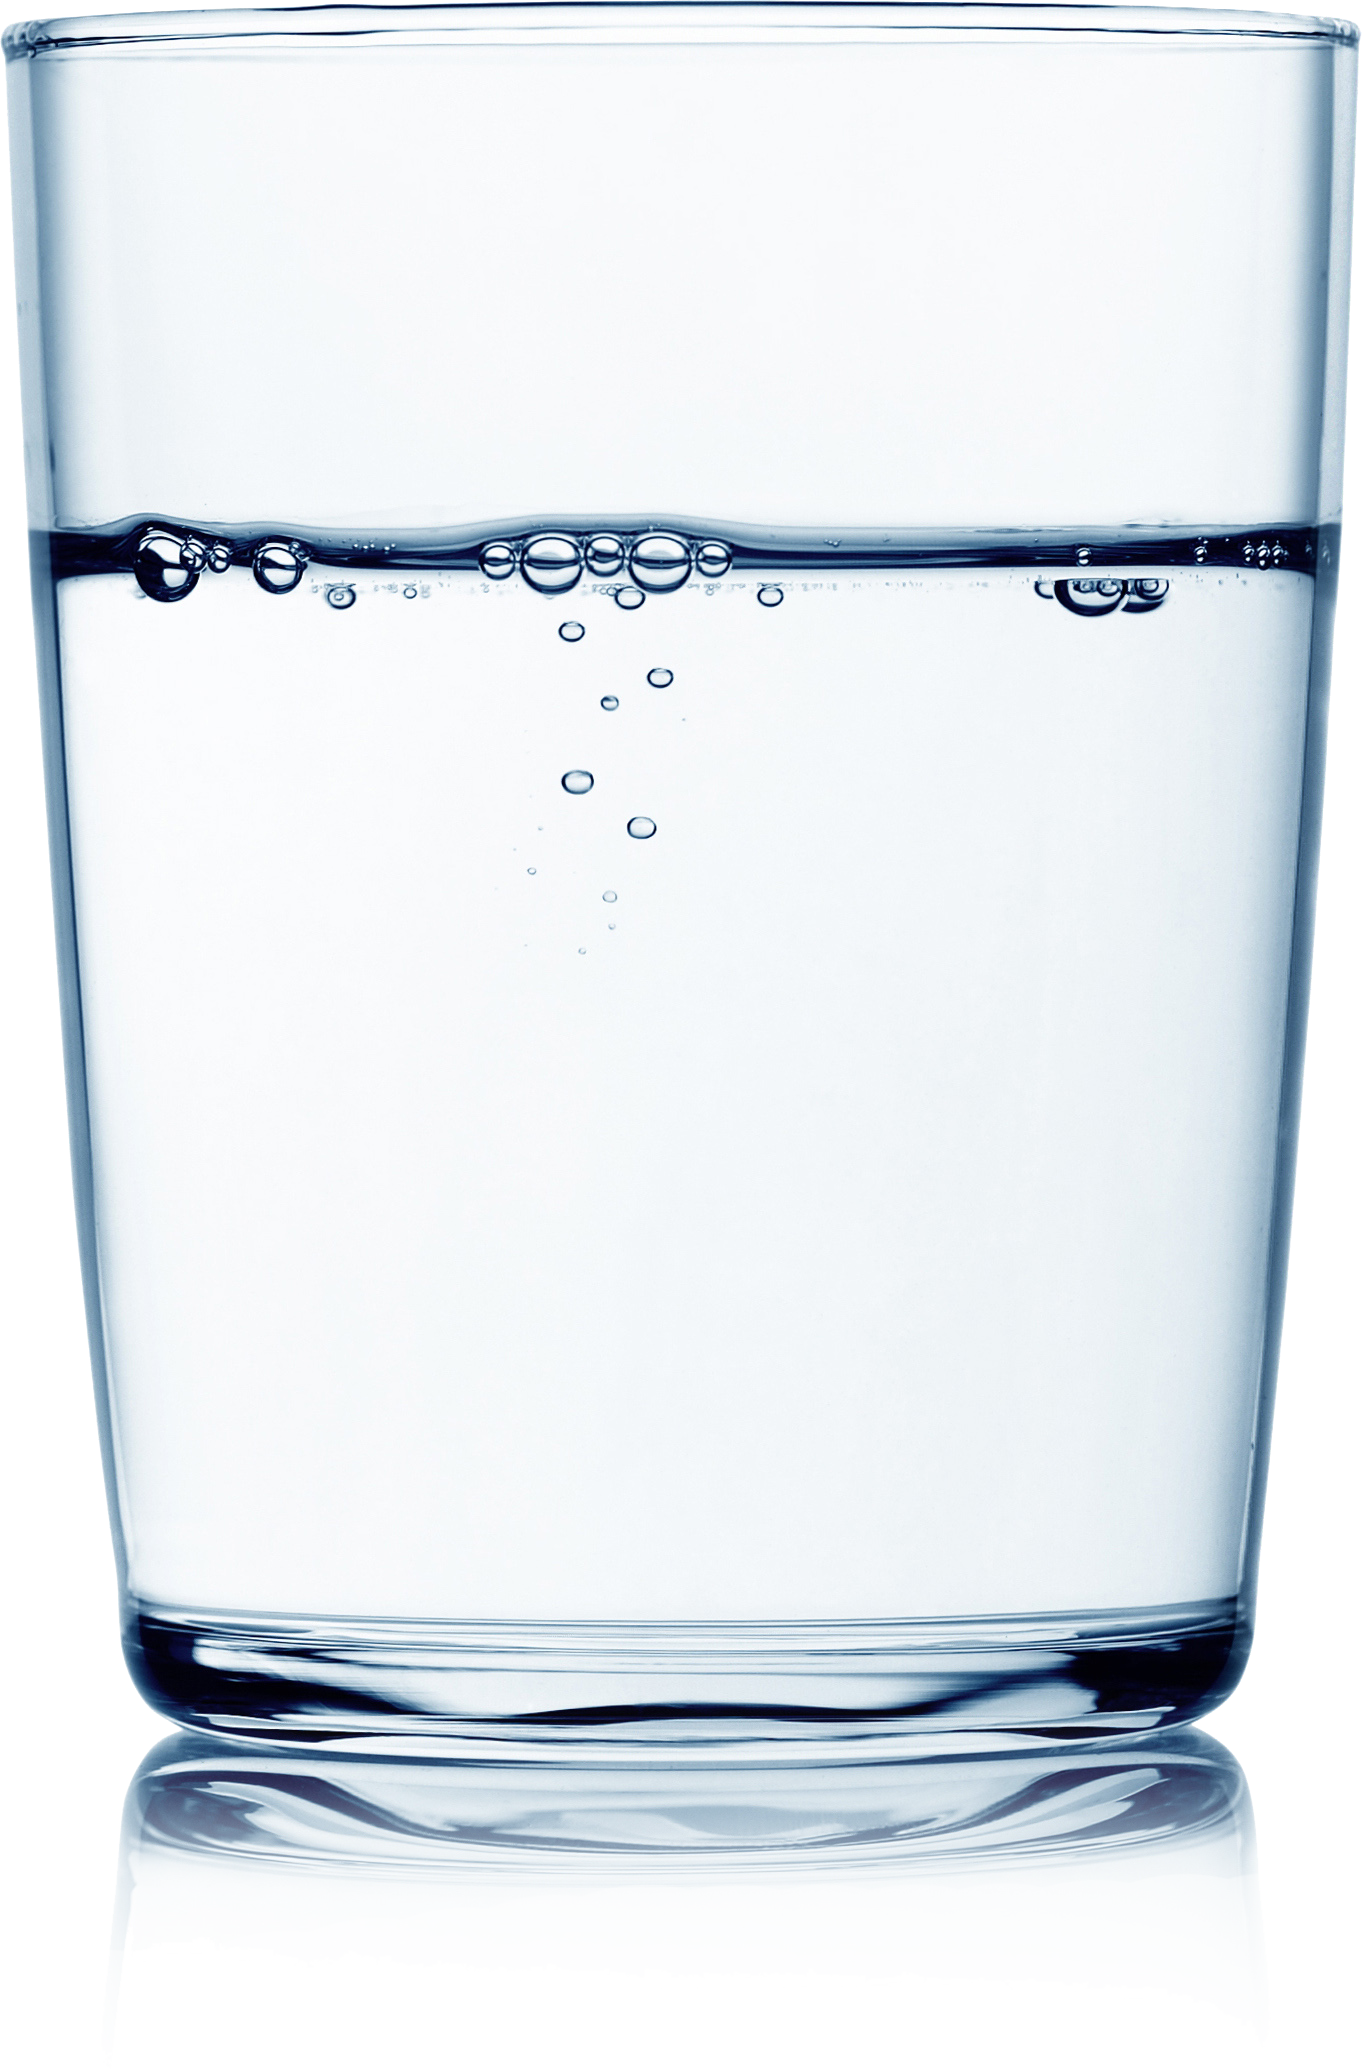 Gelas (diisi dengan air)